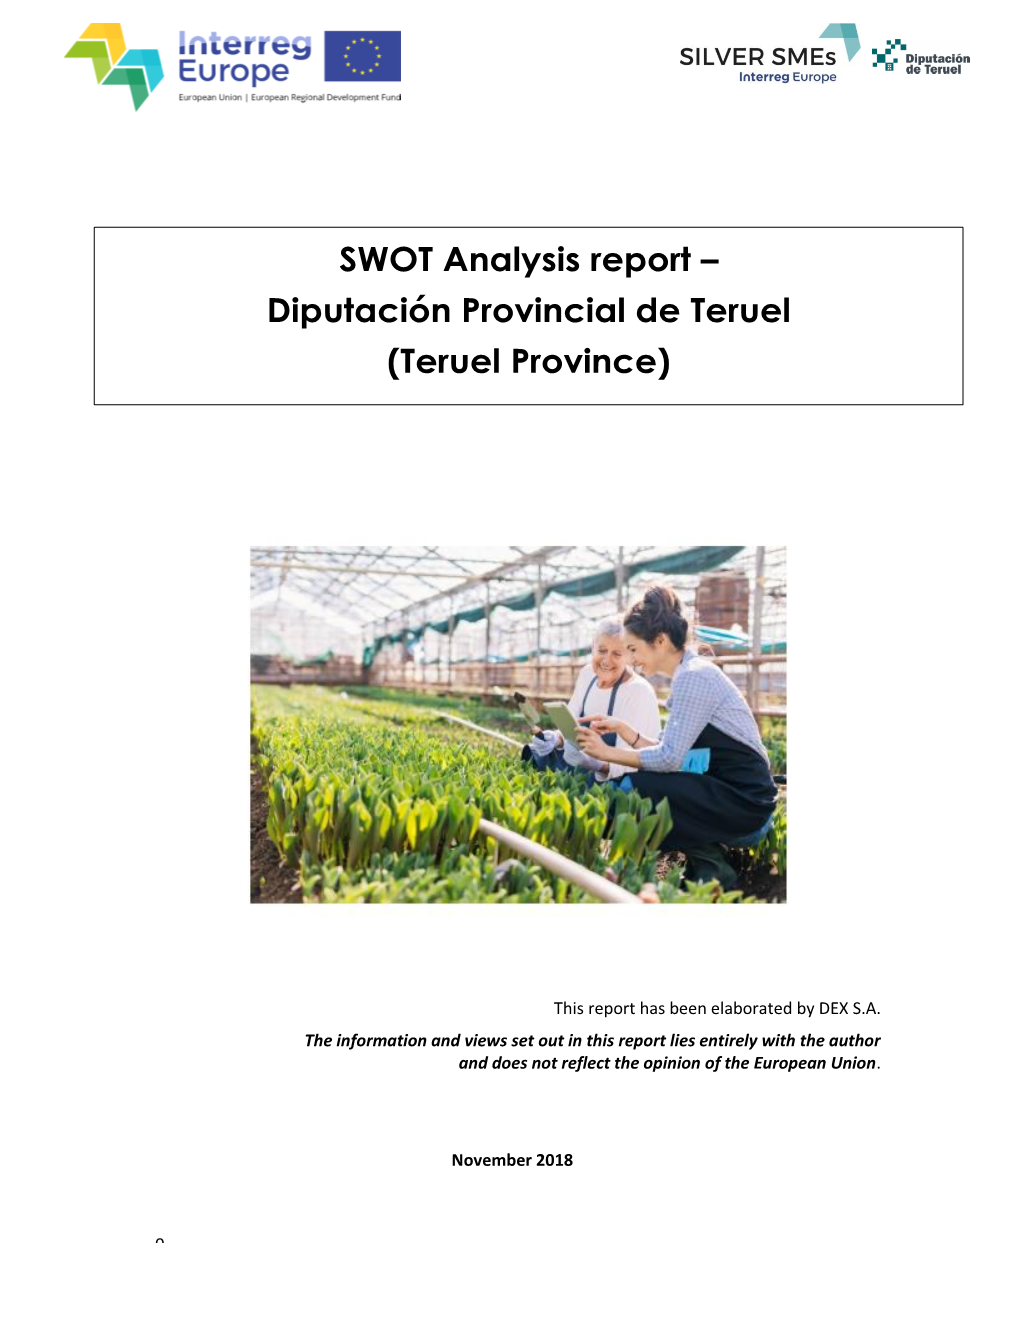 SWOT Analysis Report – Diputación Provincial De Teruel (Teruel Province)